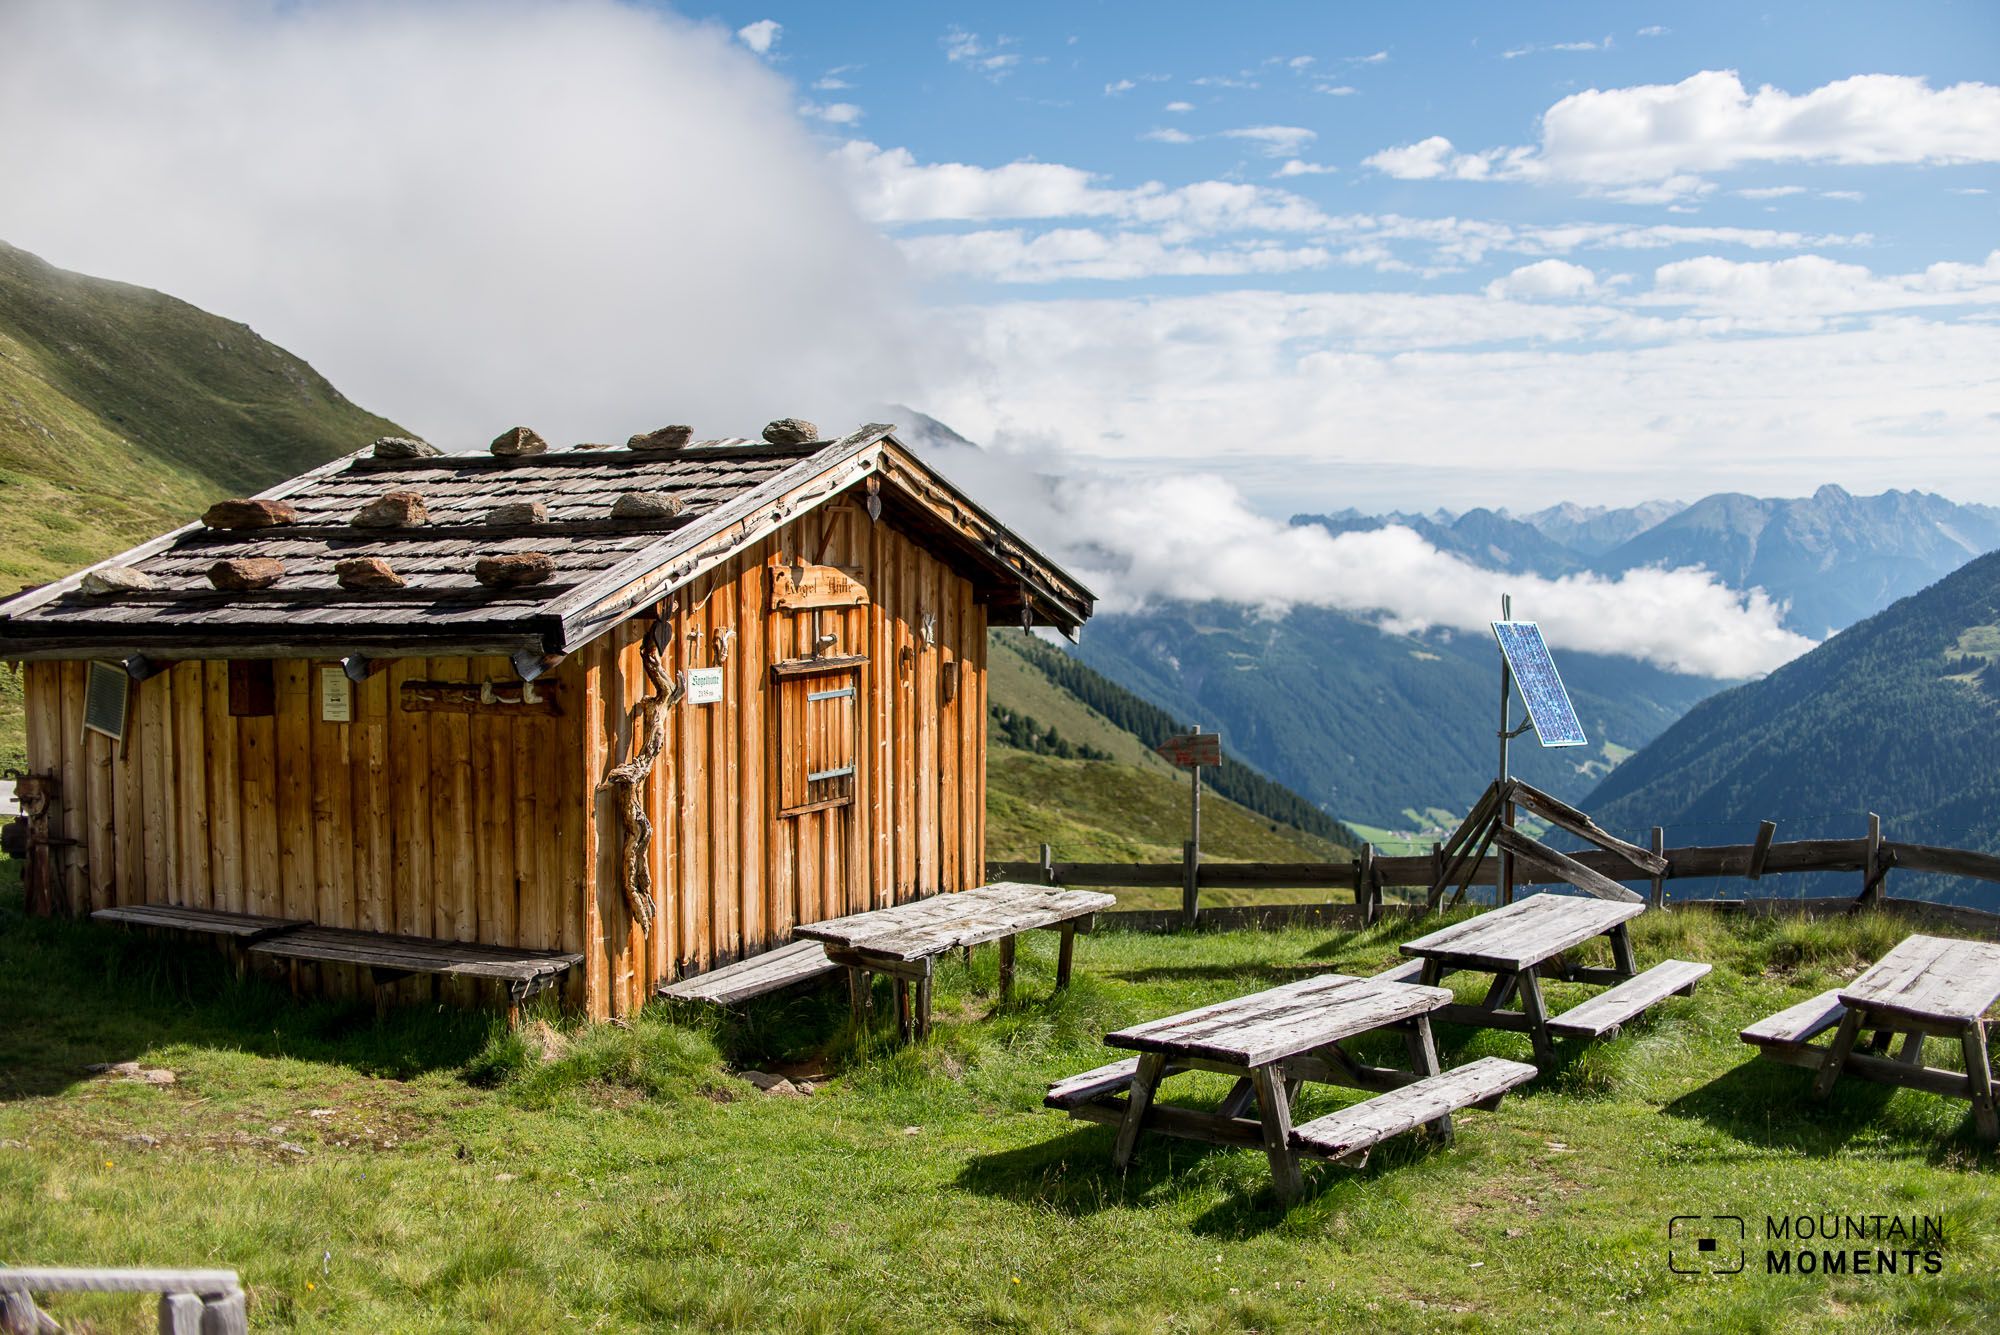 Sellrainer Hüttenrunde! Mehrtägiges Hüttenwandern Nahe Innsbruck im Flow mit der Natur